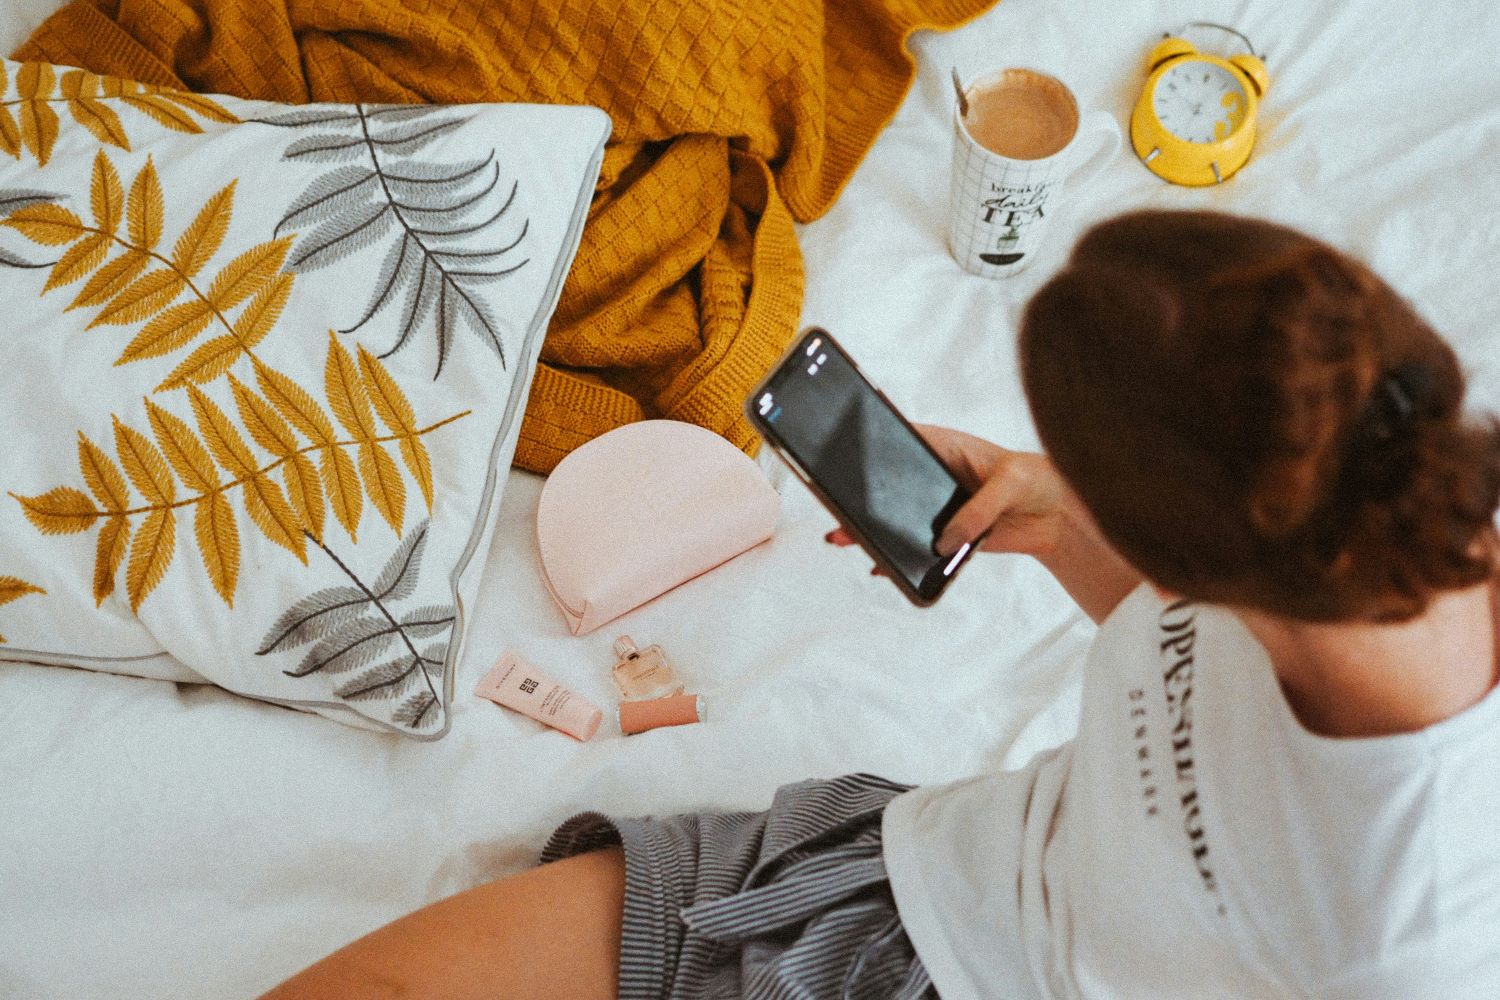 Gezeigt ist eine Frau, die auf einem Bett sitzt und mit ihrem Handy Bilder von Beauty-Produkten macht.